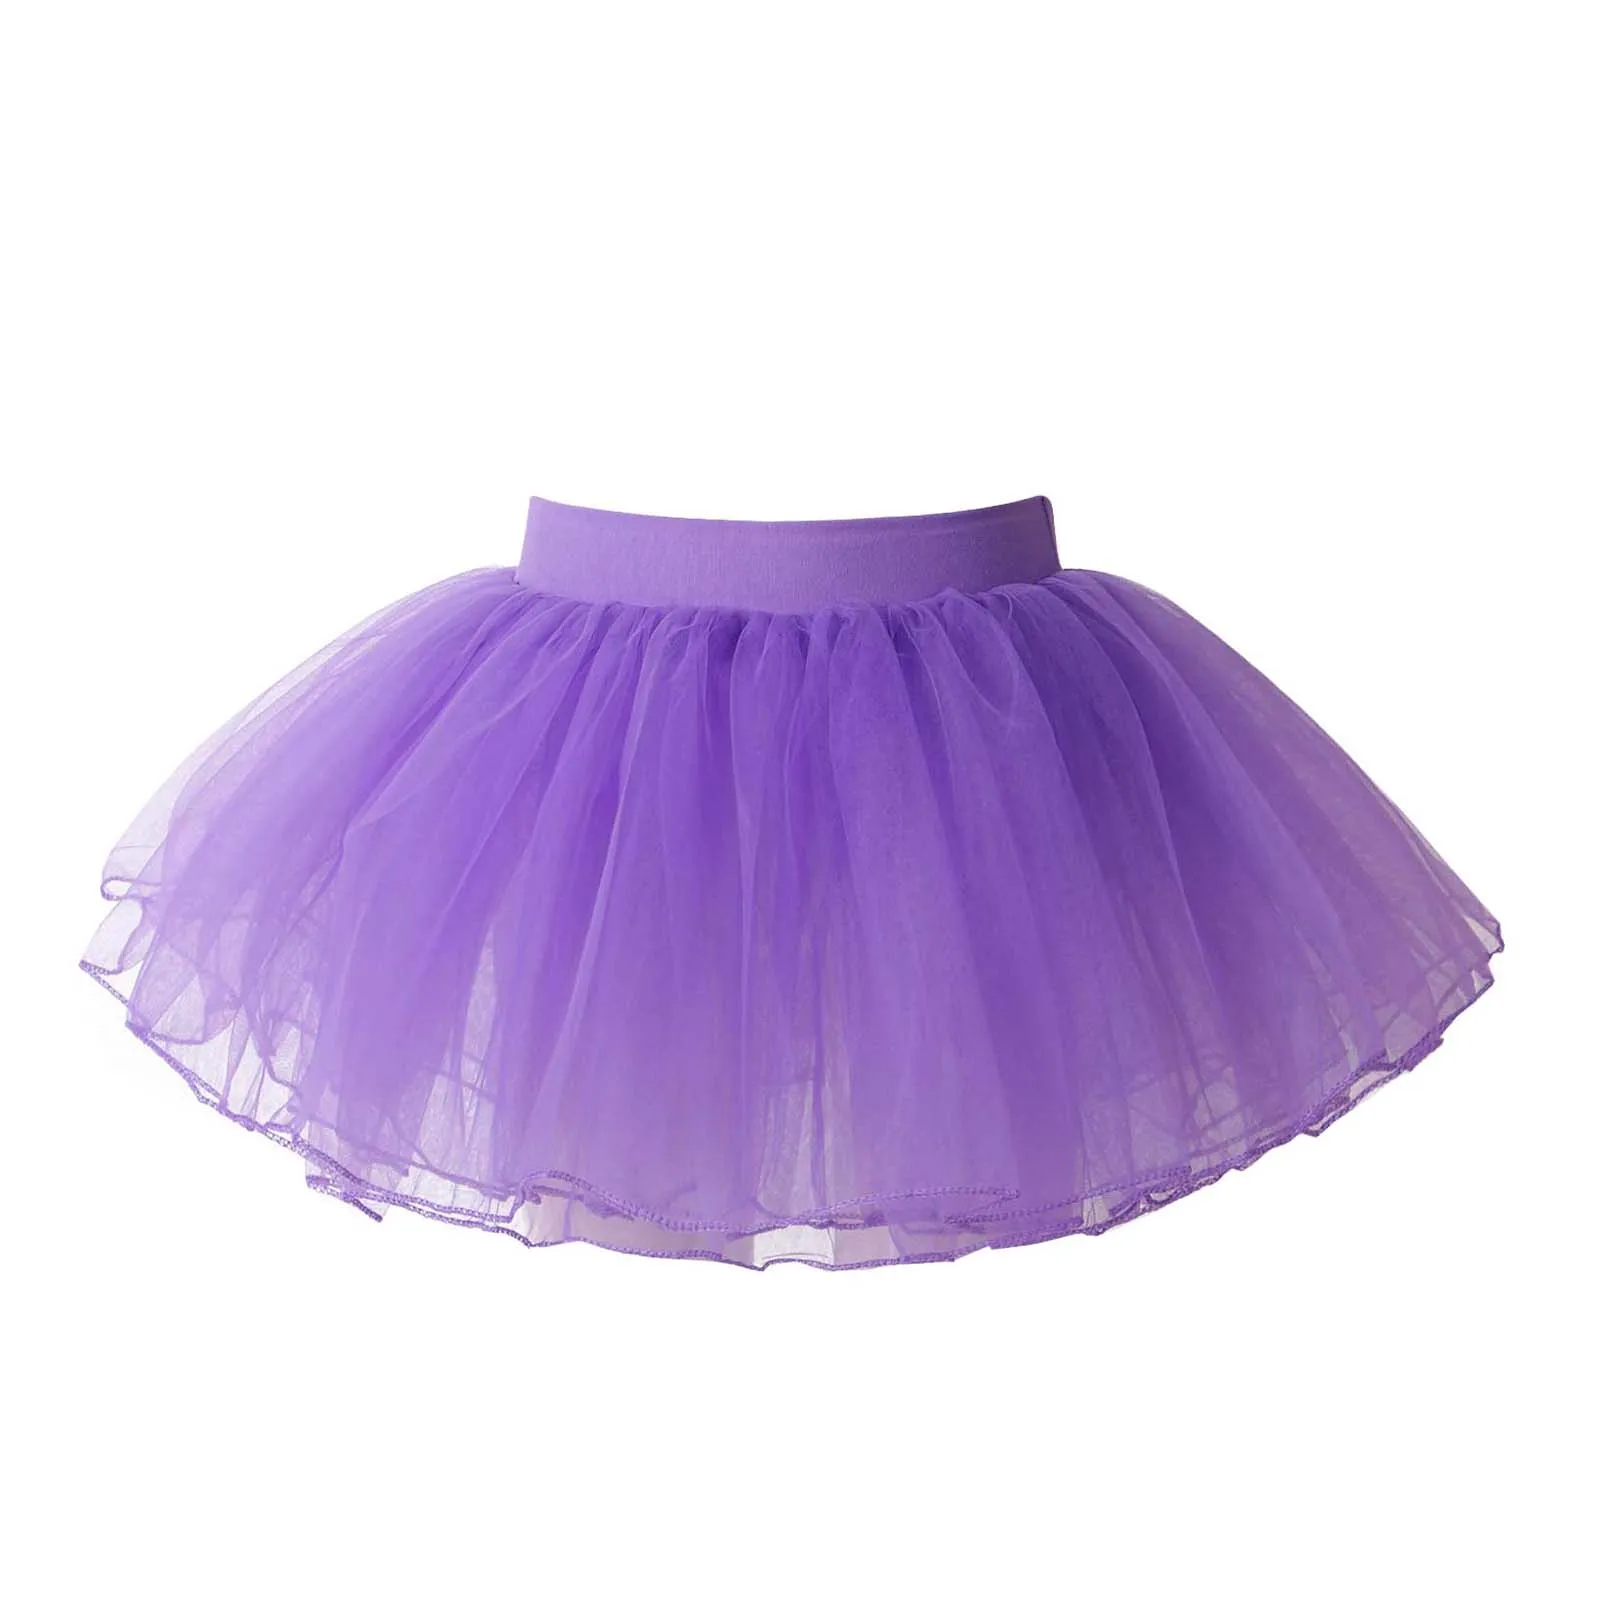 

Пышная юбка-пачка для девочек, балетная танцевальная мини-юбка, бальное платье принцессы на день рождения, детская одежда, 4-слойные фатинов...